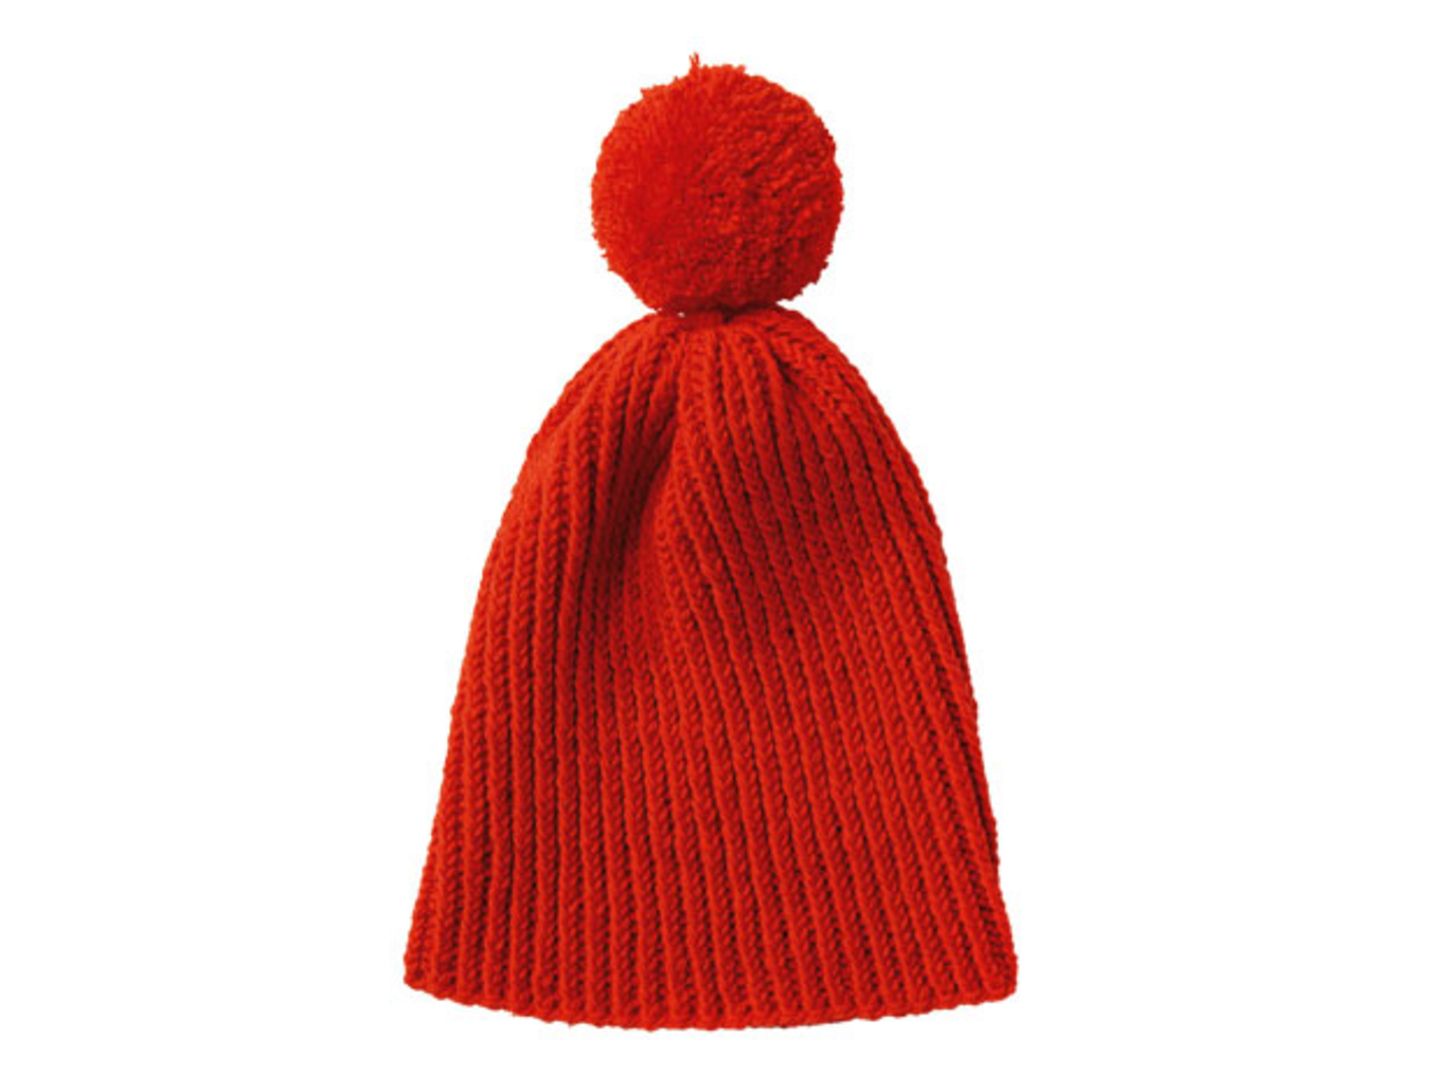 Rote Mütze mit Bommel stricken - eine Anleitung